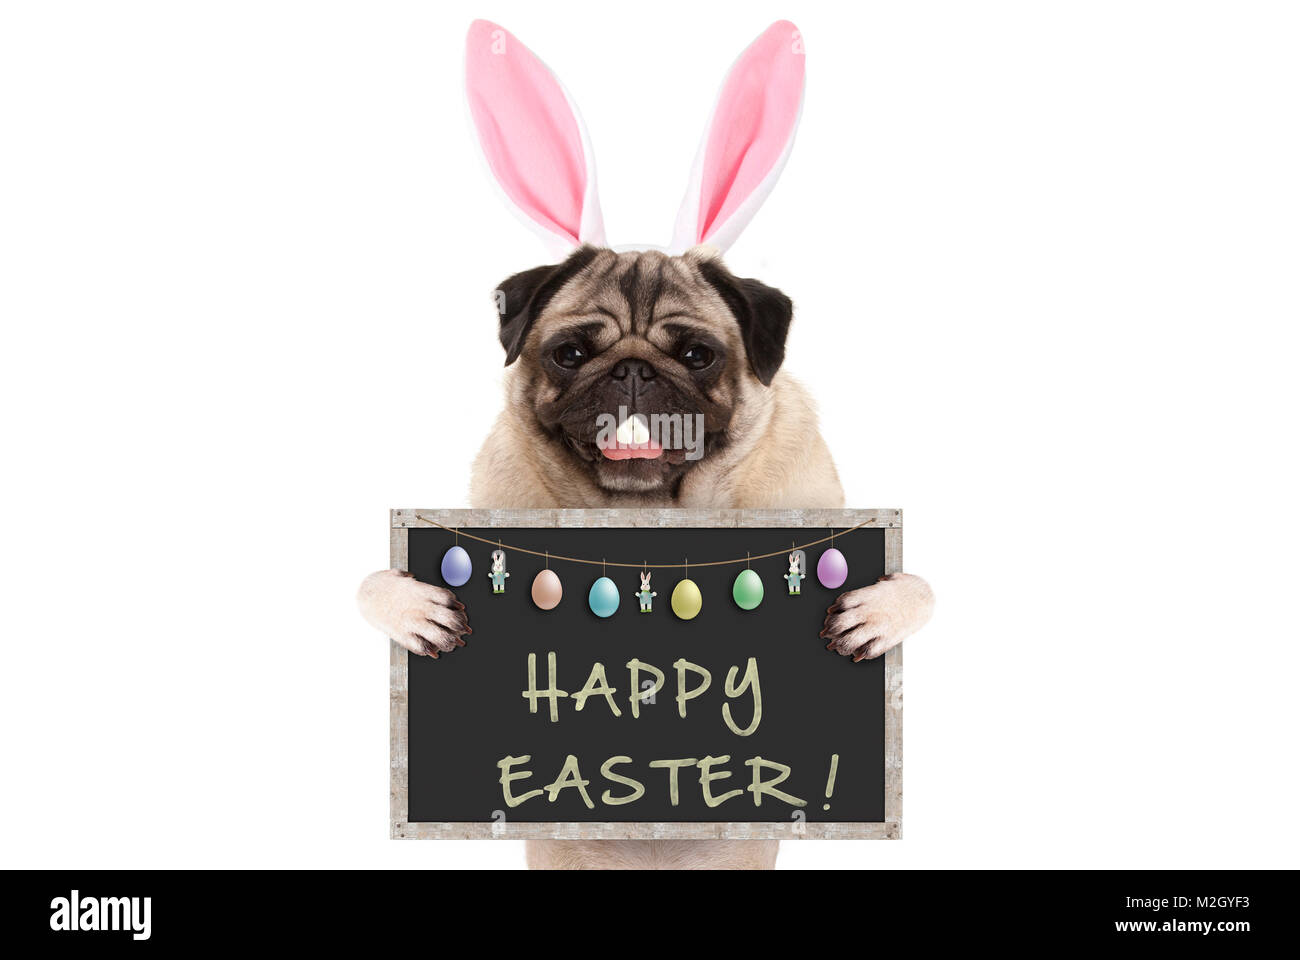 Lustige Ostern mops Hund mit Kaninchen Zähne, schnurrhaare und Ohren  halten, Huhn, auf weißem Hintergrund Stockfotografie - Alamy